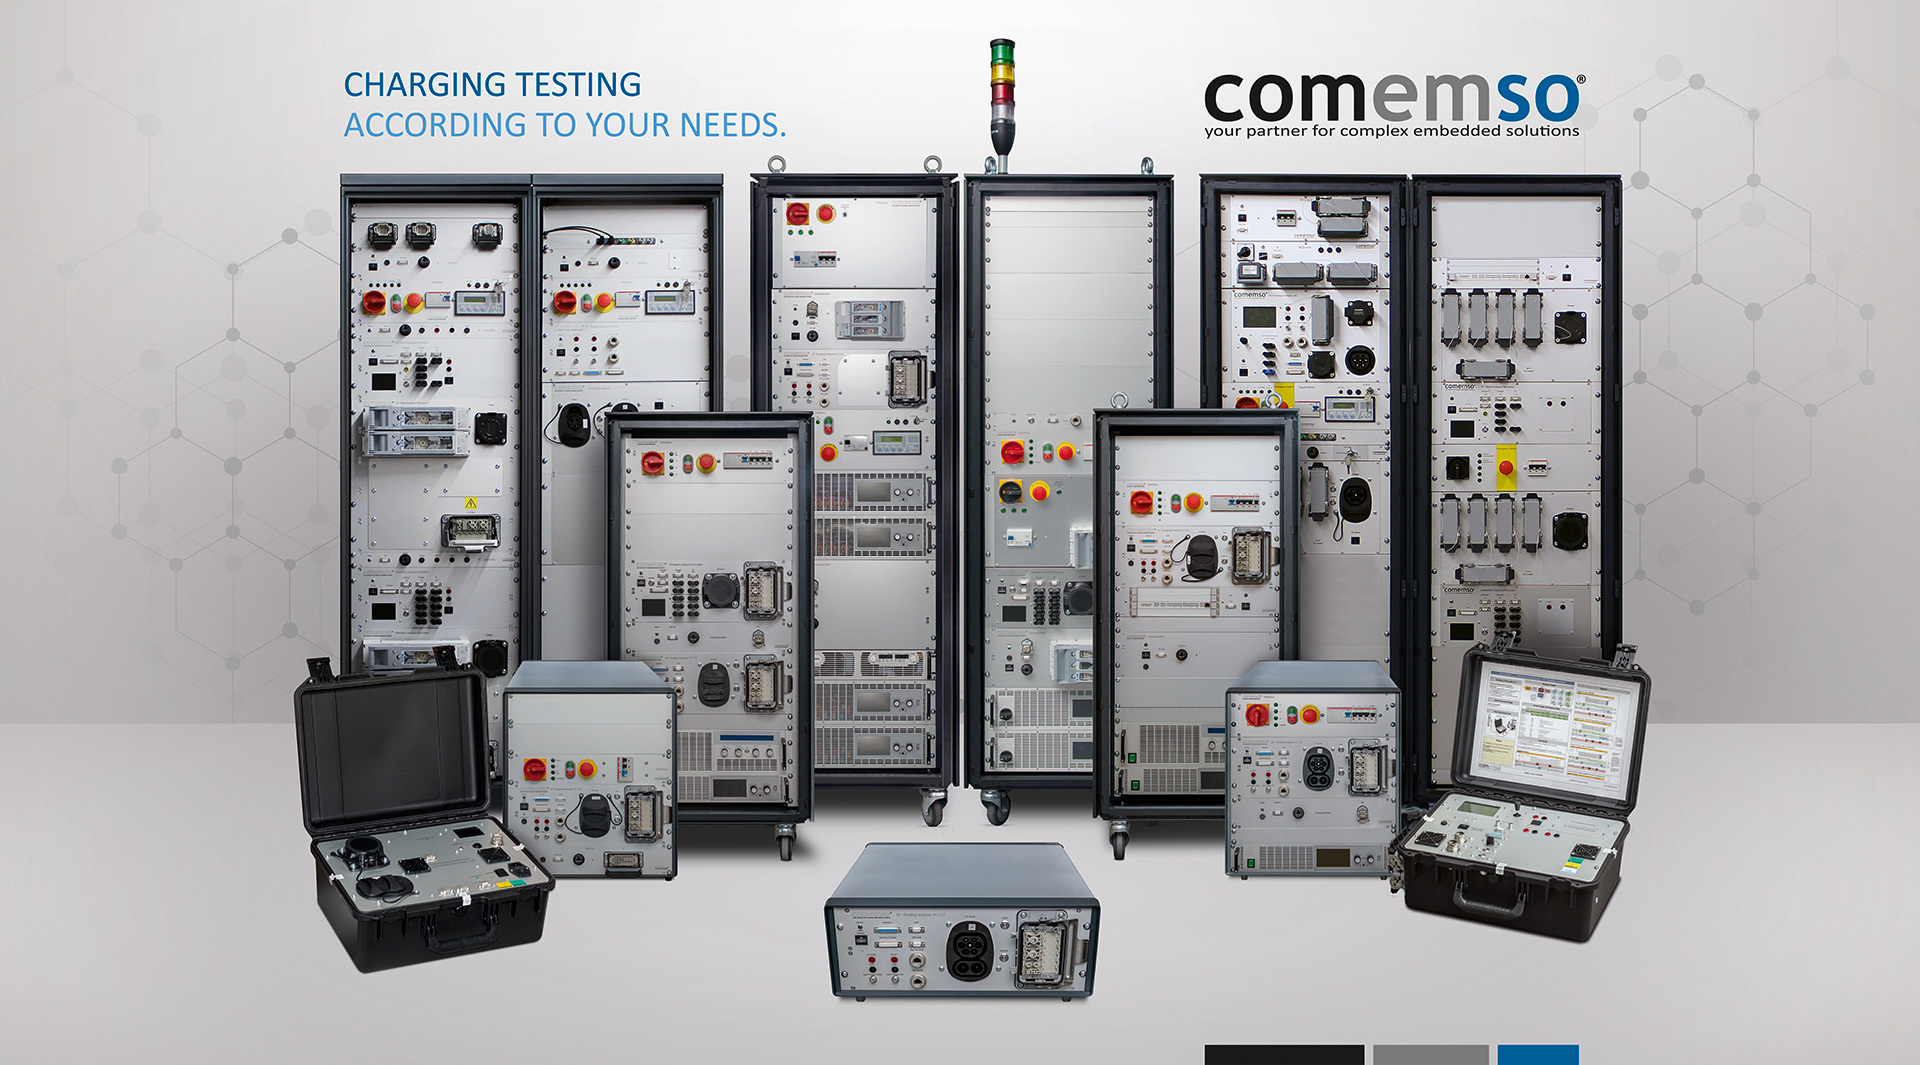 德国科尼绍Comemso汽车充电分析仪(CCS 标准)